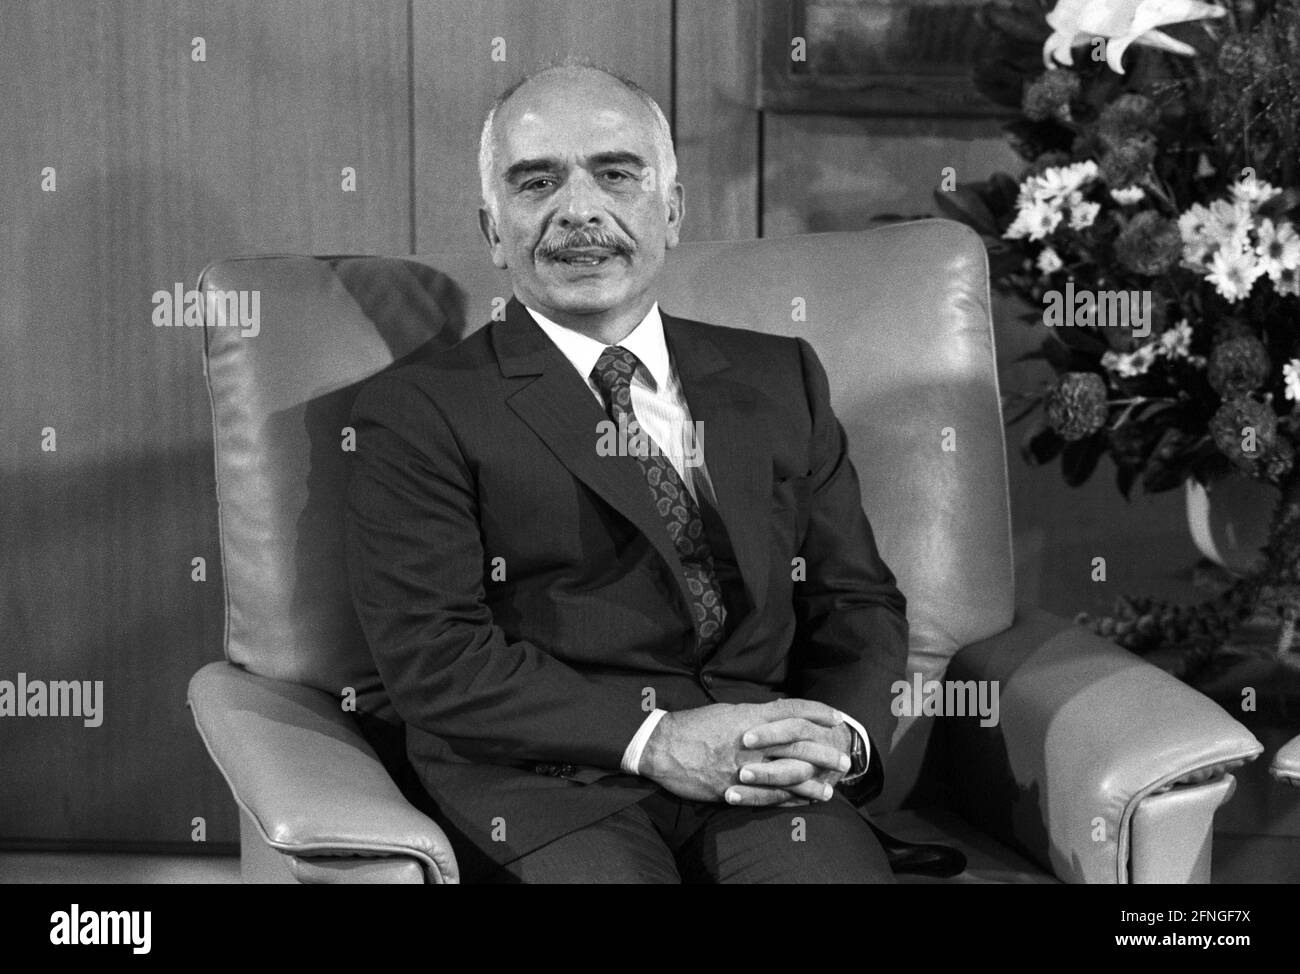 Allemagne, Bonn, 03.09.1990 Archive-No.: 20-17-31 Roi Hussein de Jordanie à Bonn photo: Roi Hussein Bin Talal [traduction automatique] Banque D'Images